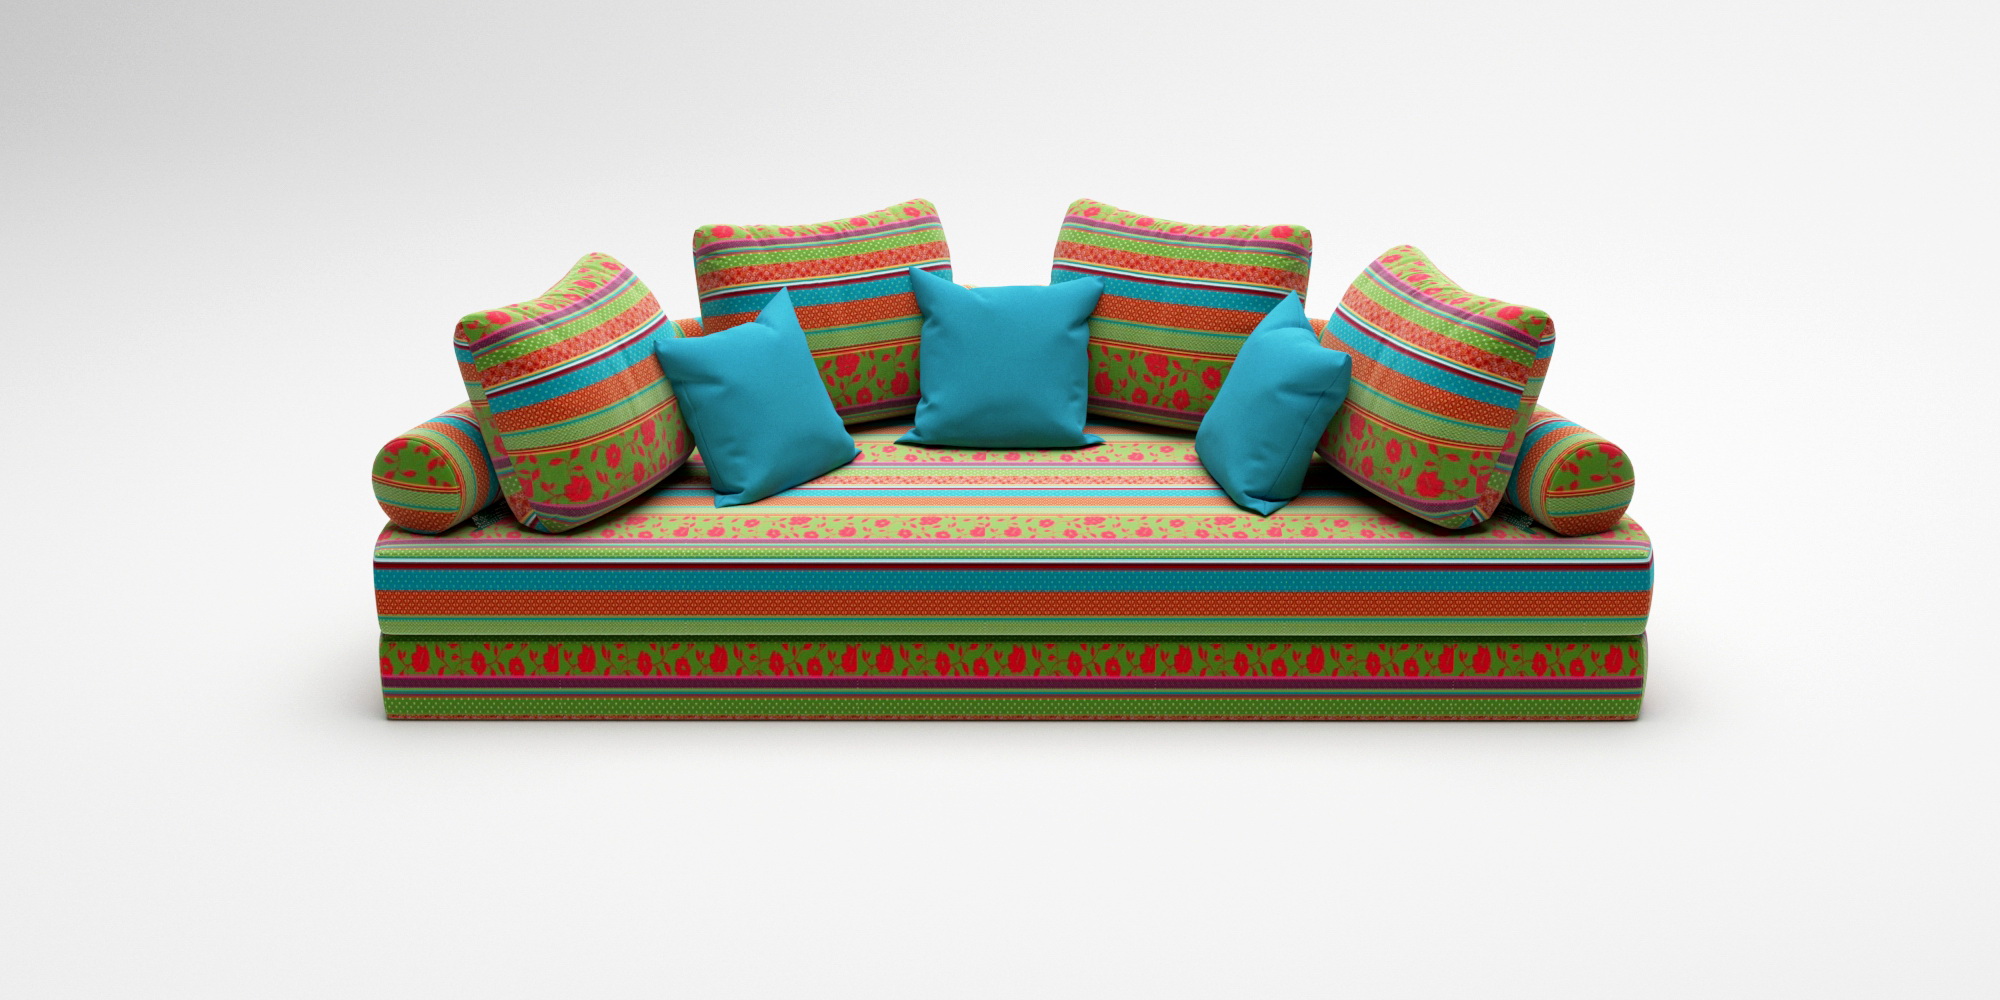 Примеры диванов в восточном стиле по индивидуальным заказам.